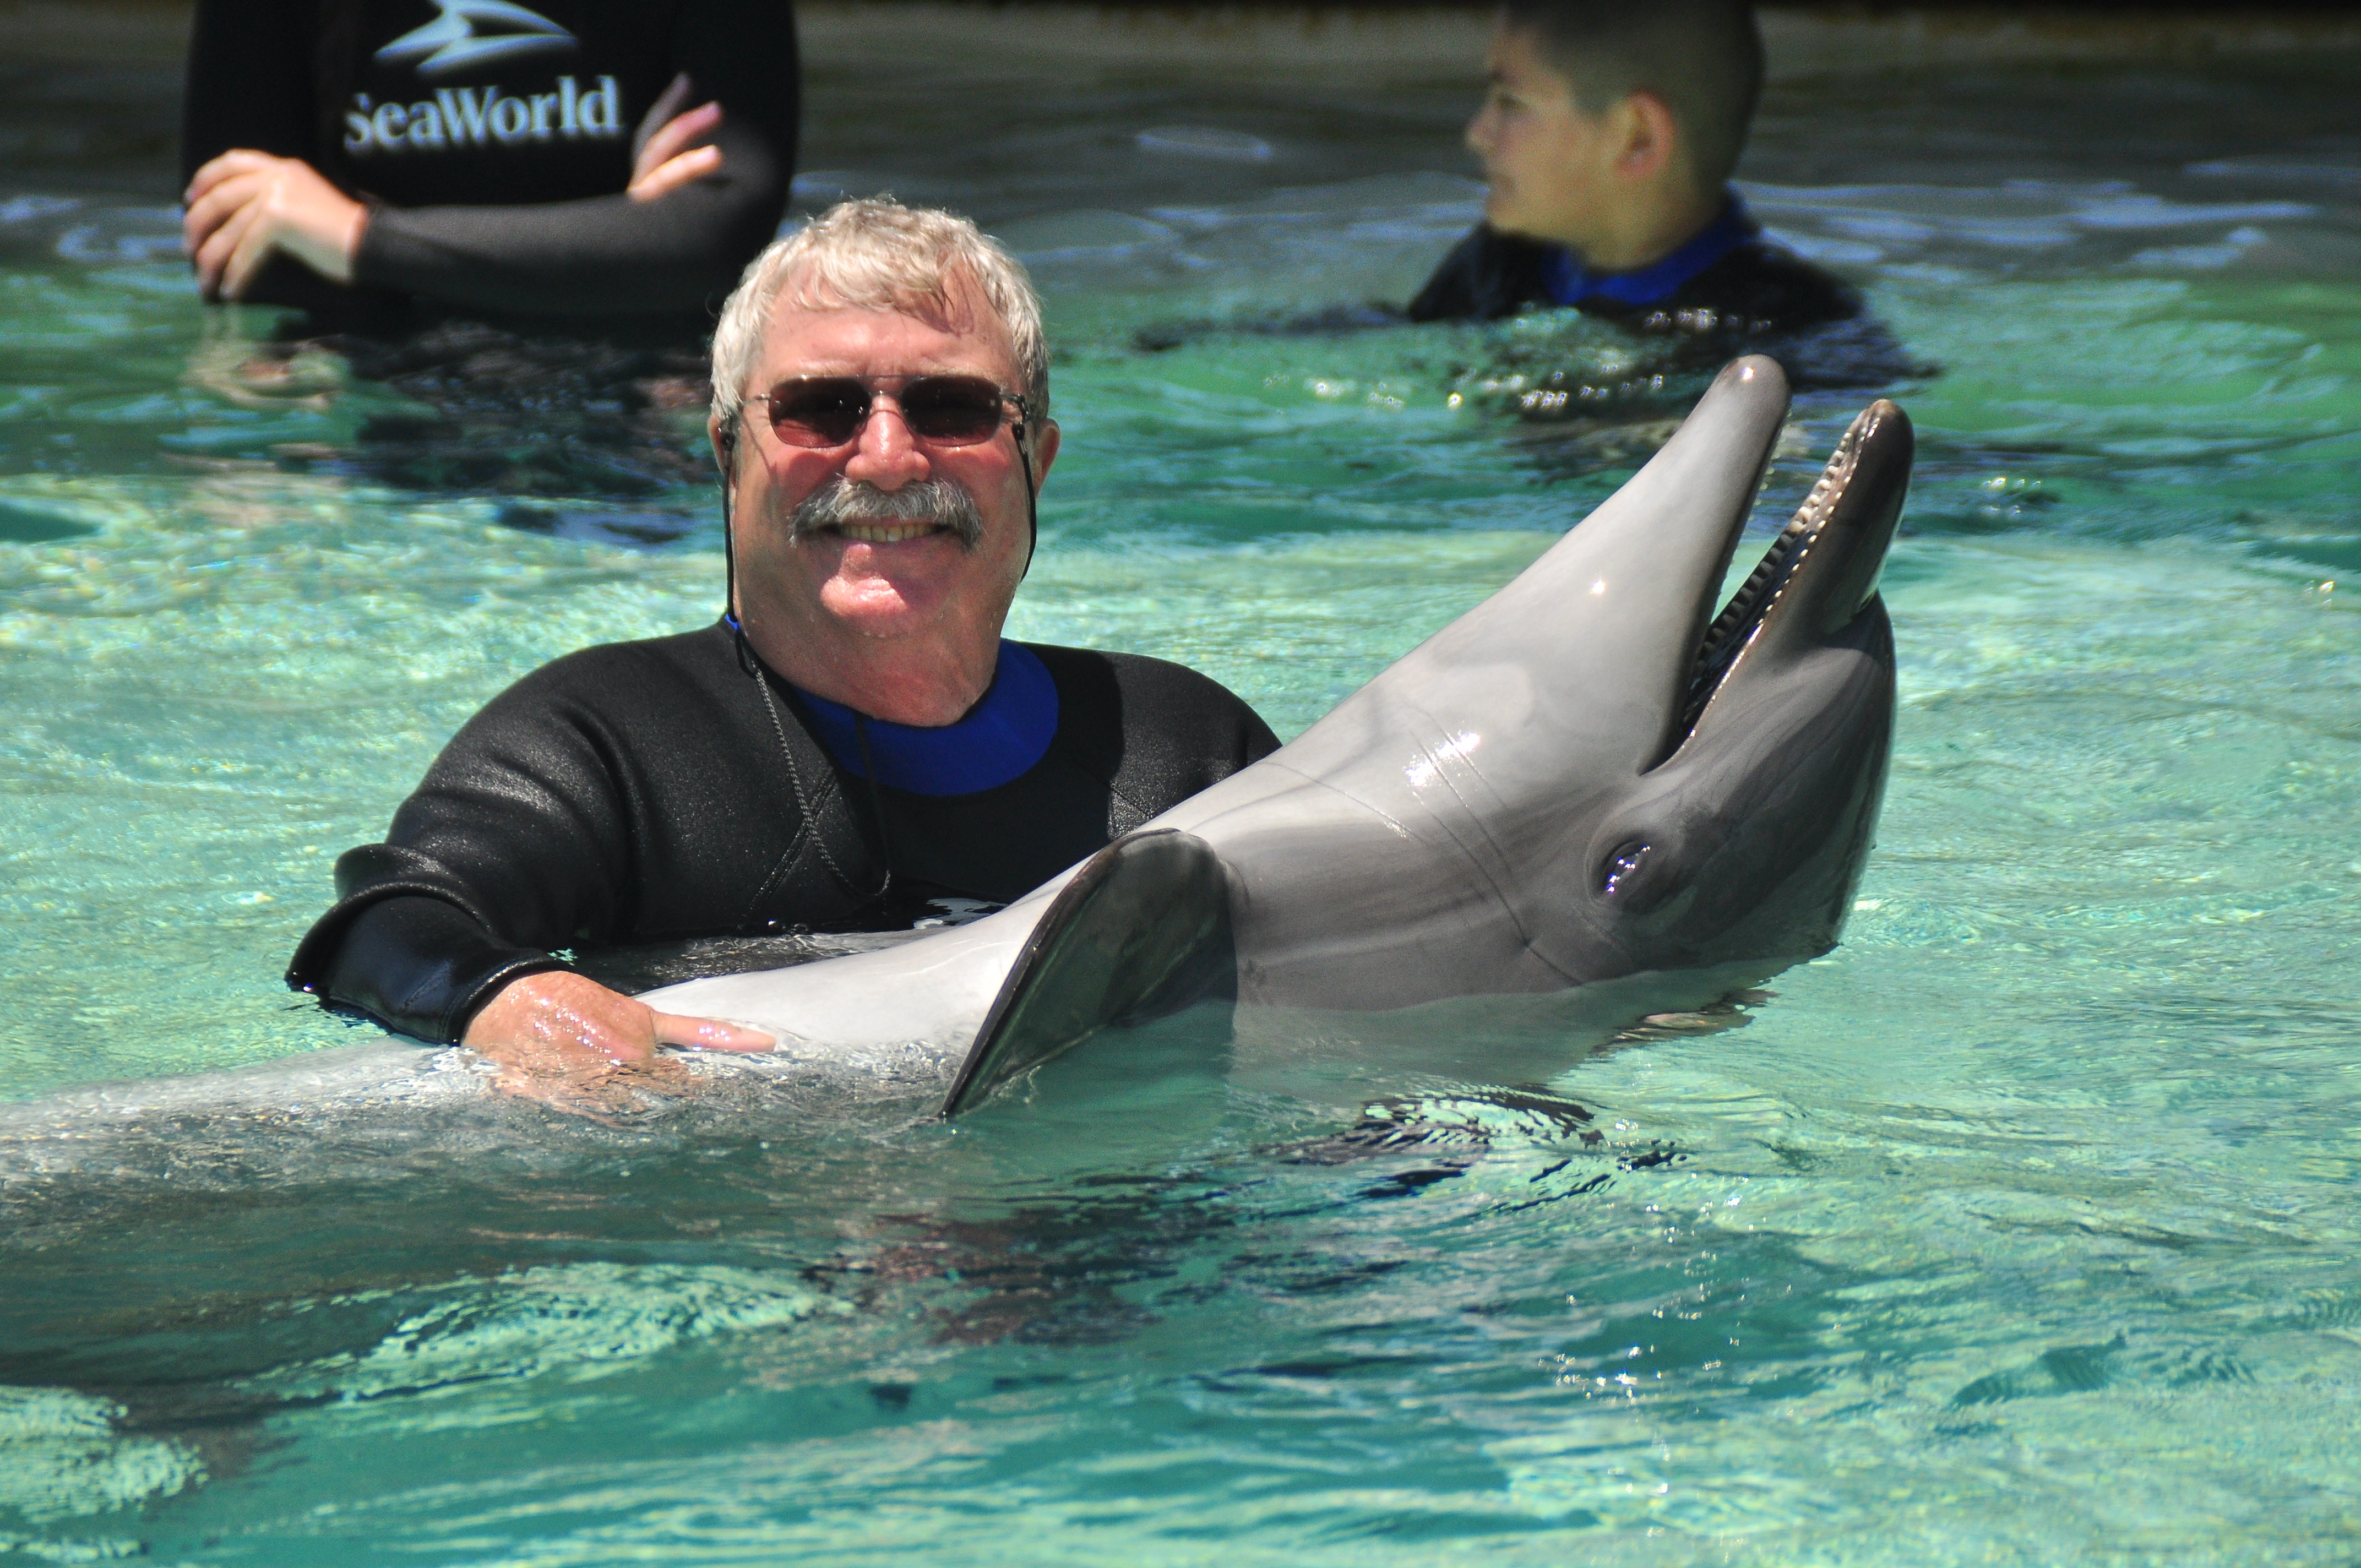 Timothy Marxer at Sea World ib his 70th birthday